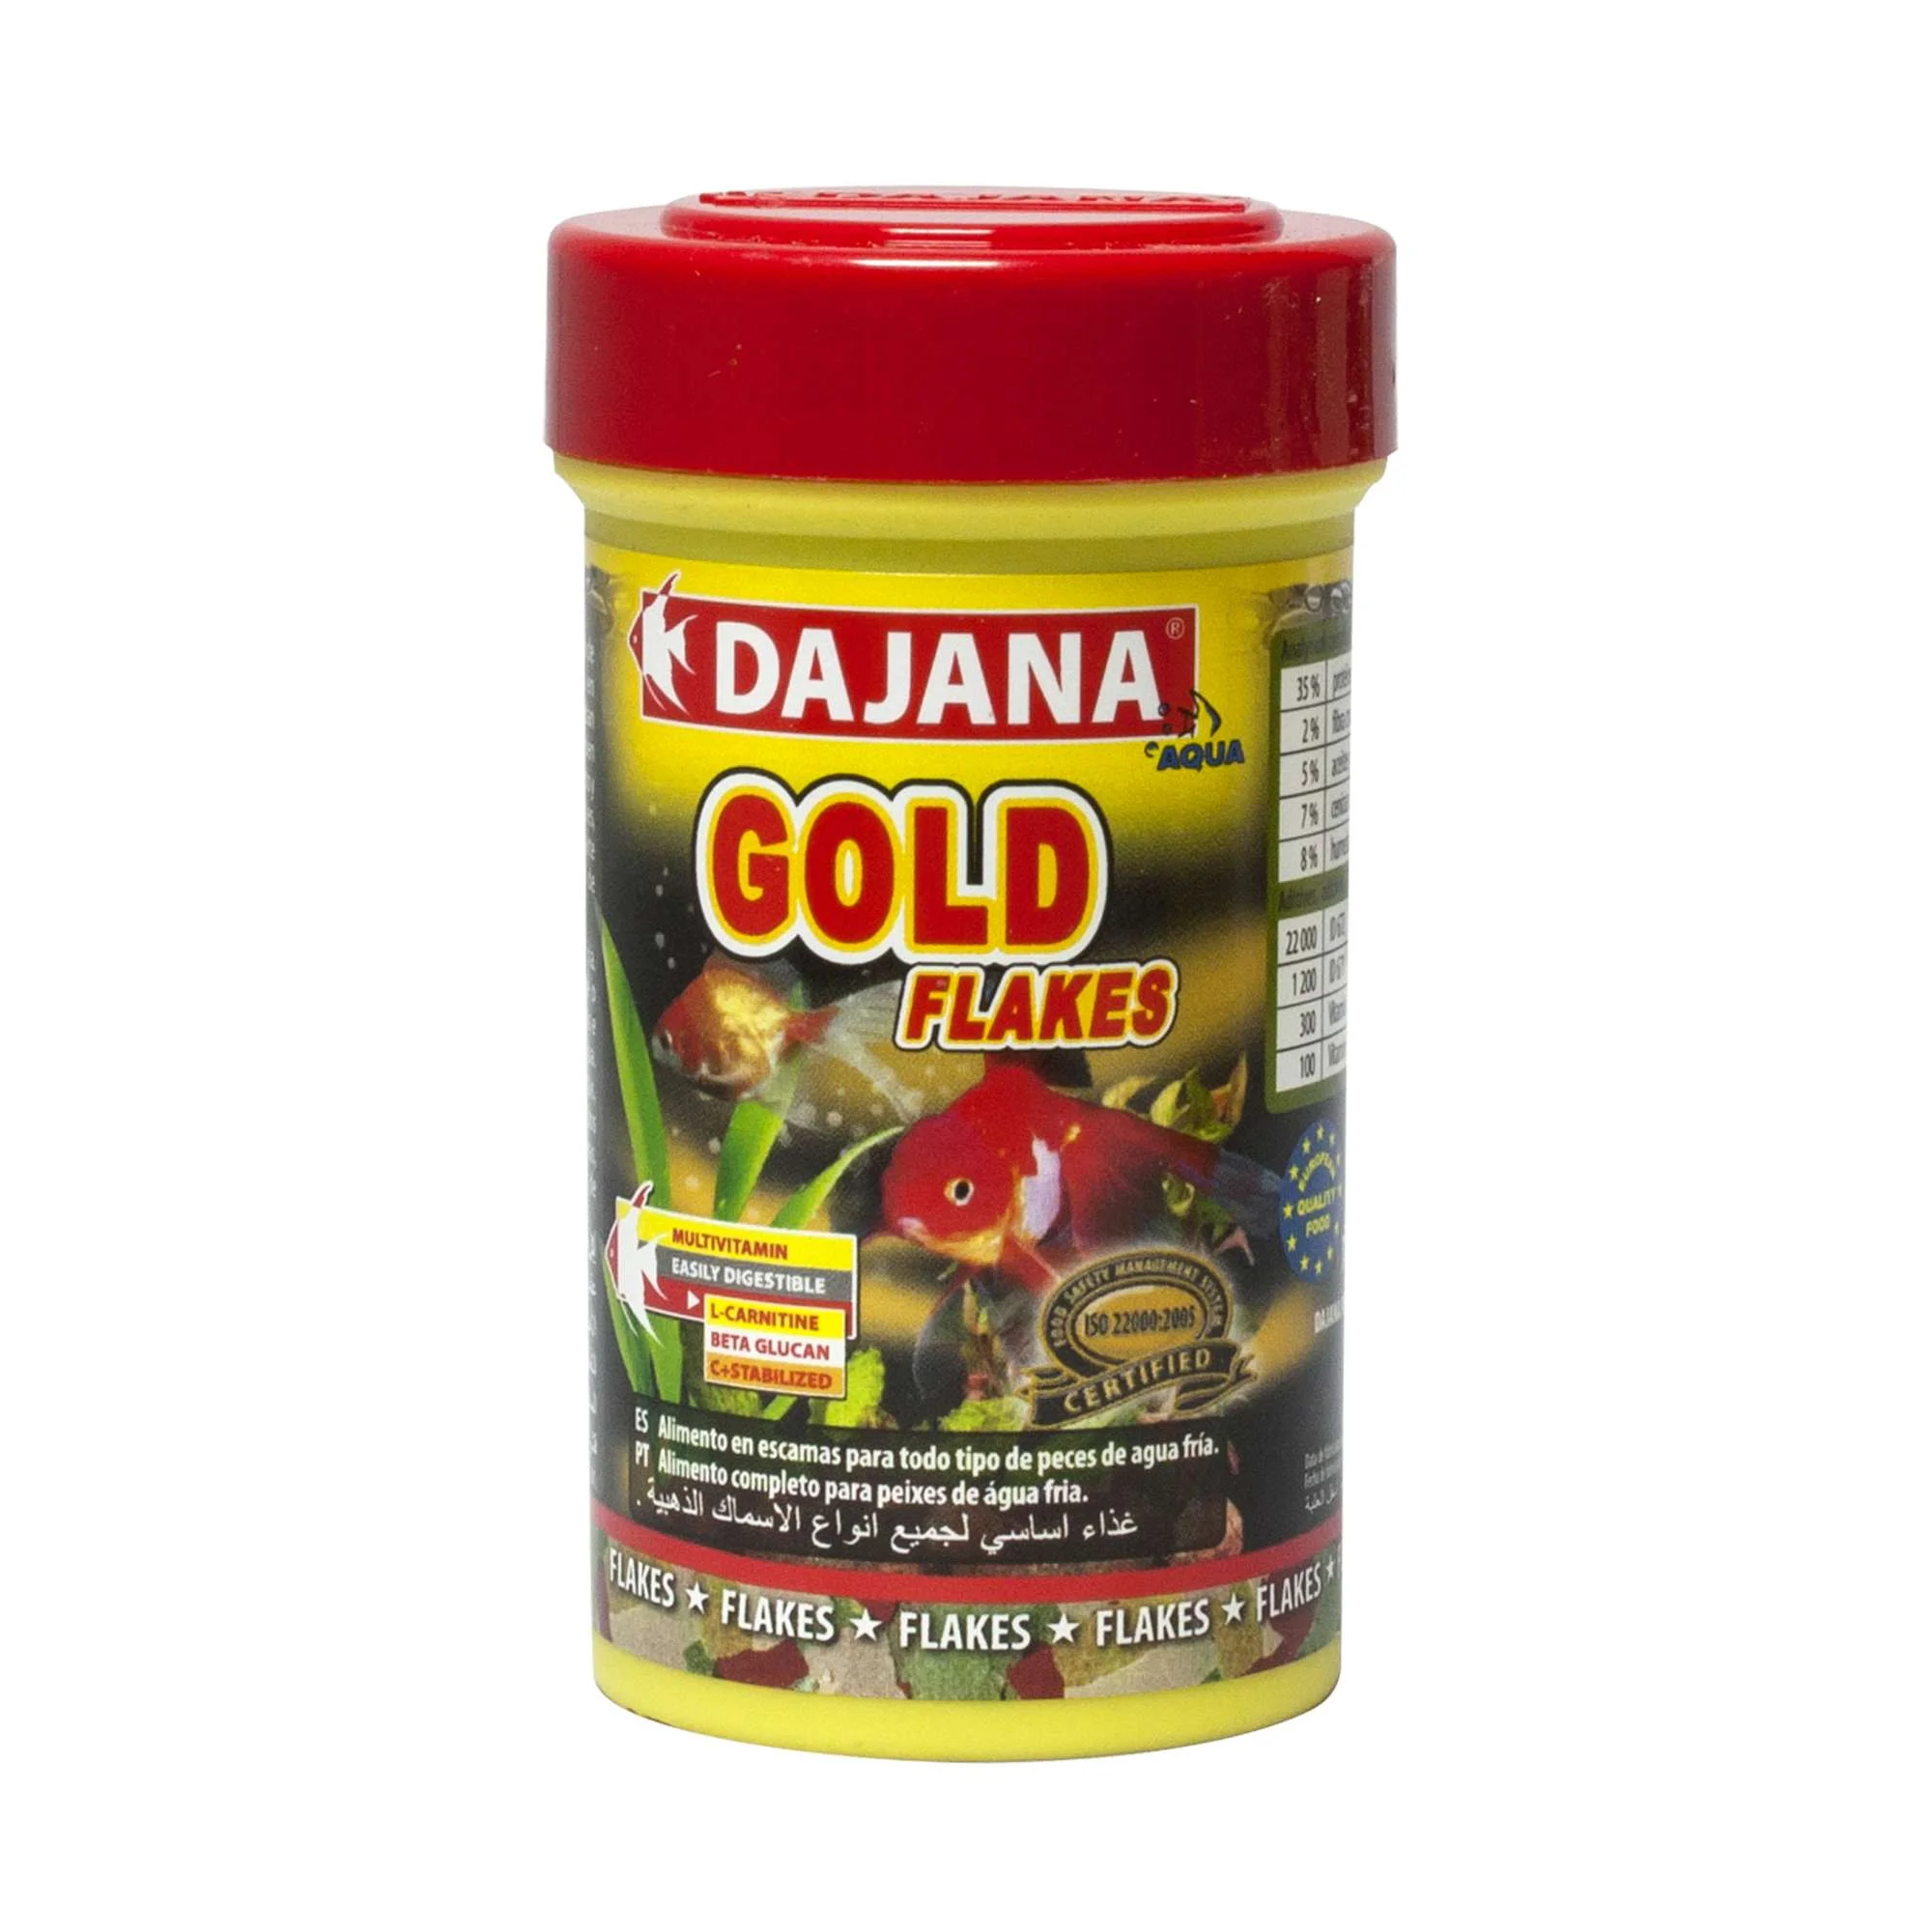 dj7101-alimento-gold-escamas-de-dajana_empaquetado_1265.jpg